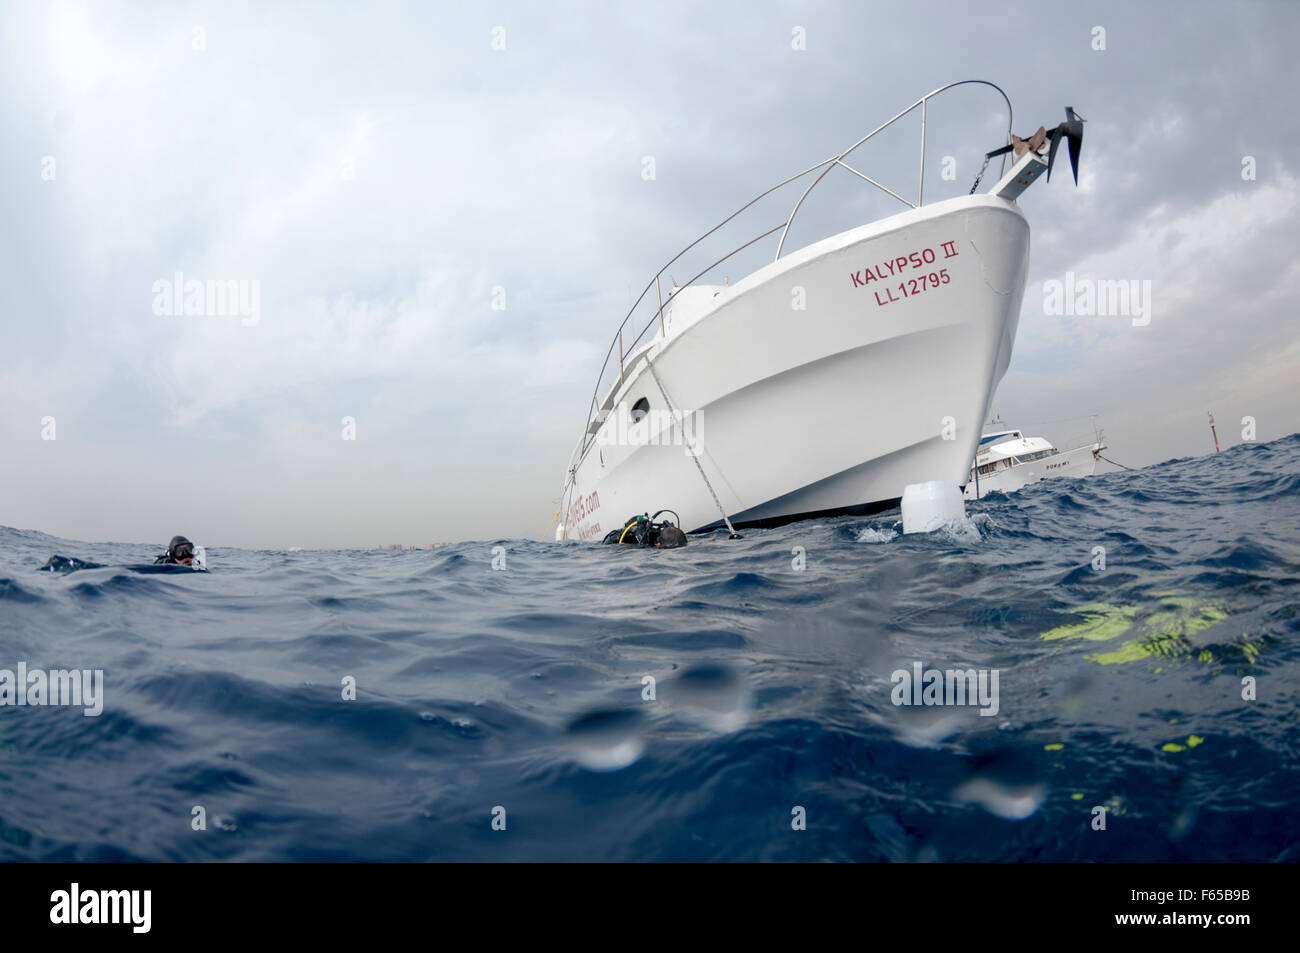 Le bateau de plongée est ancré près du site de plongée et les plongeurs ont pénétré dans l'eau de la côte photographiée Larnaca, Chypre Banque D'Images